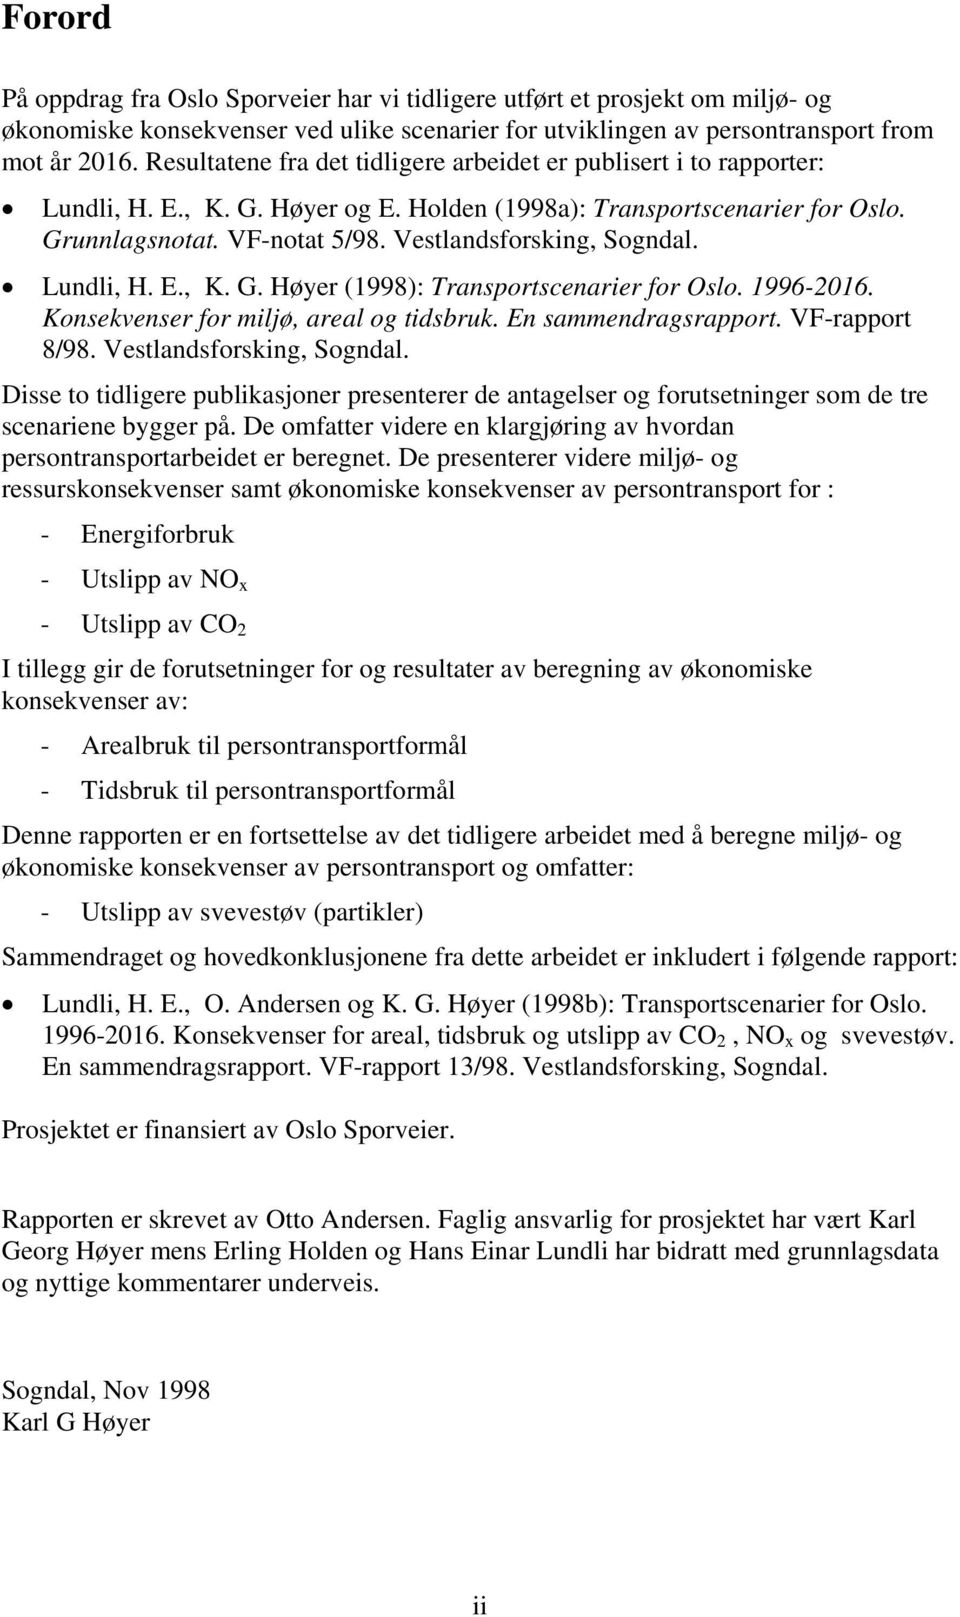 Vestlandsforsking, Sogndal. Lundli, H. E., K. G. Høyer (1998): Transportscenarier for Oslo. 1996-2016. Konsekvenser for miljø, areal og tidsbruk. En sammendragsrapport. VF-rapport 8/98.